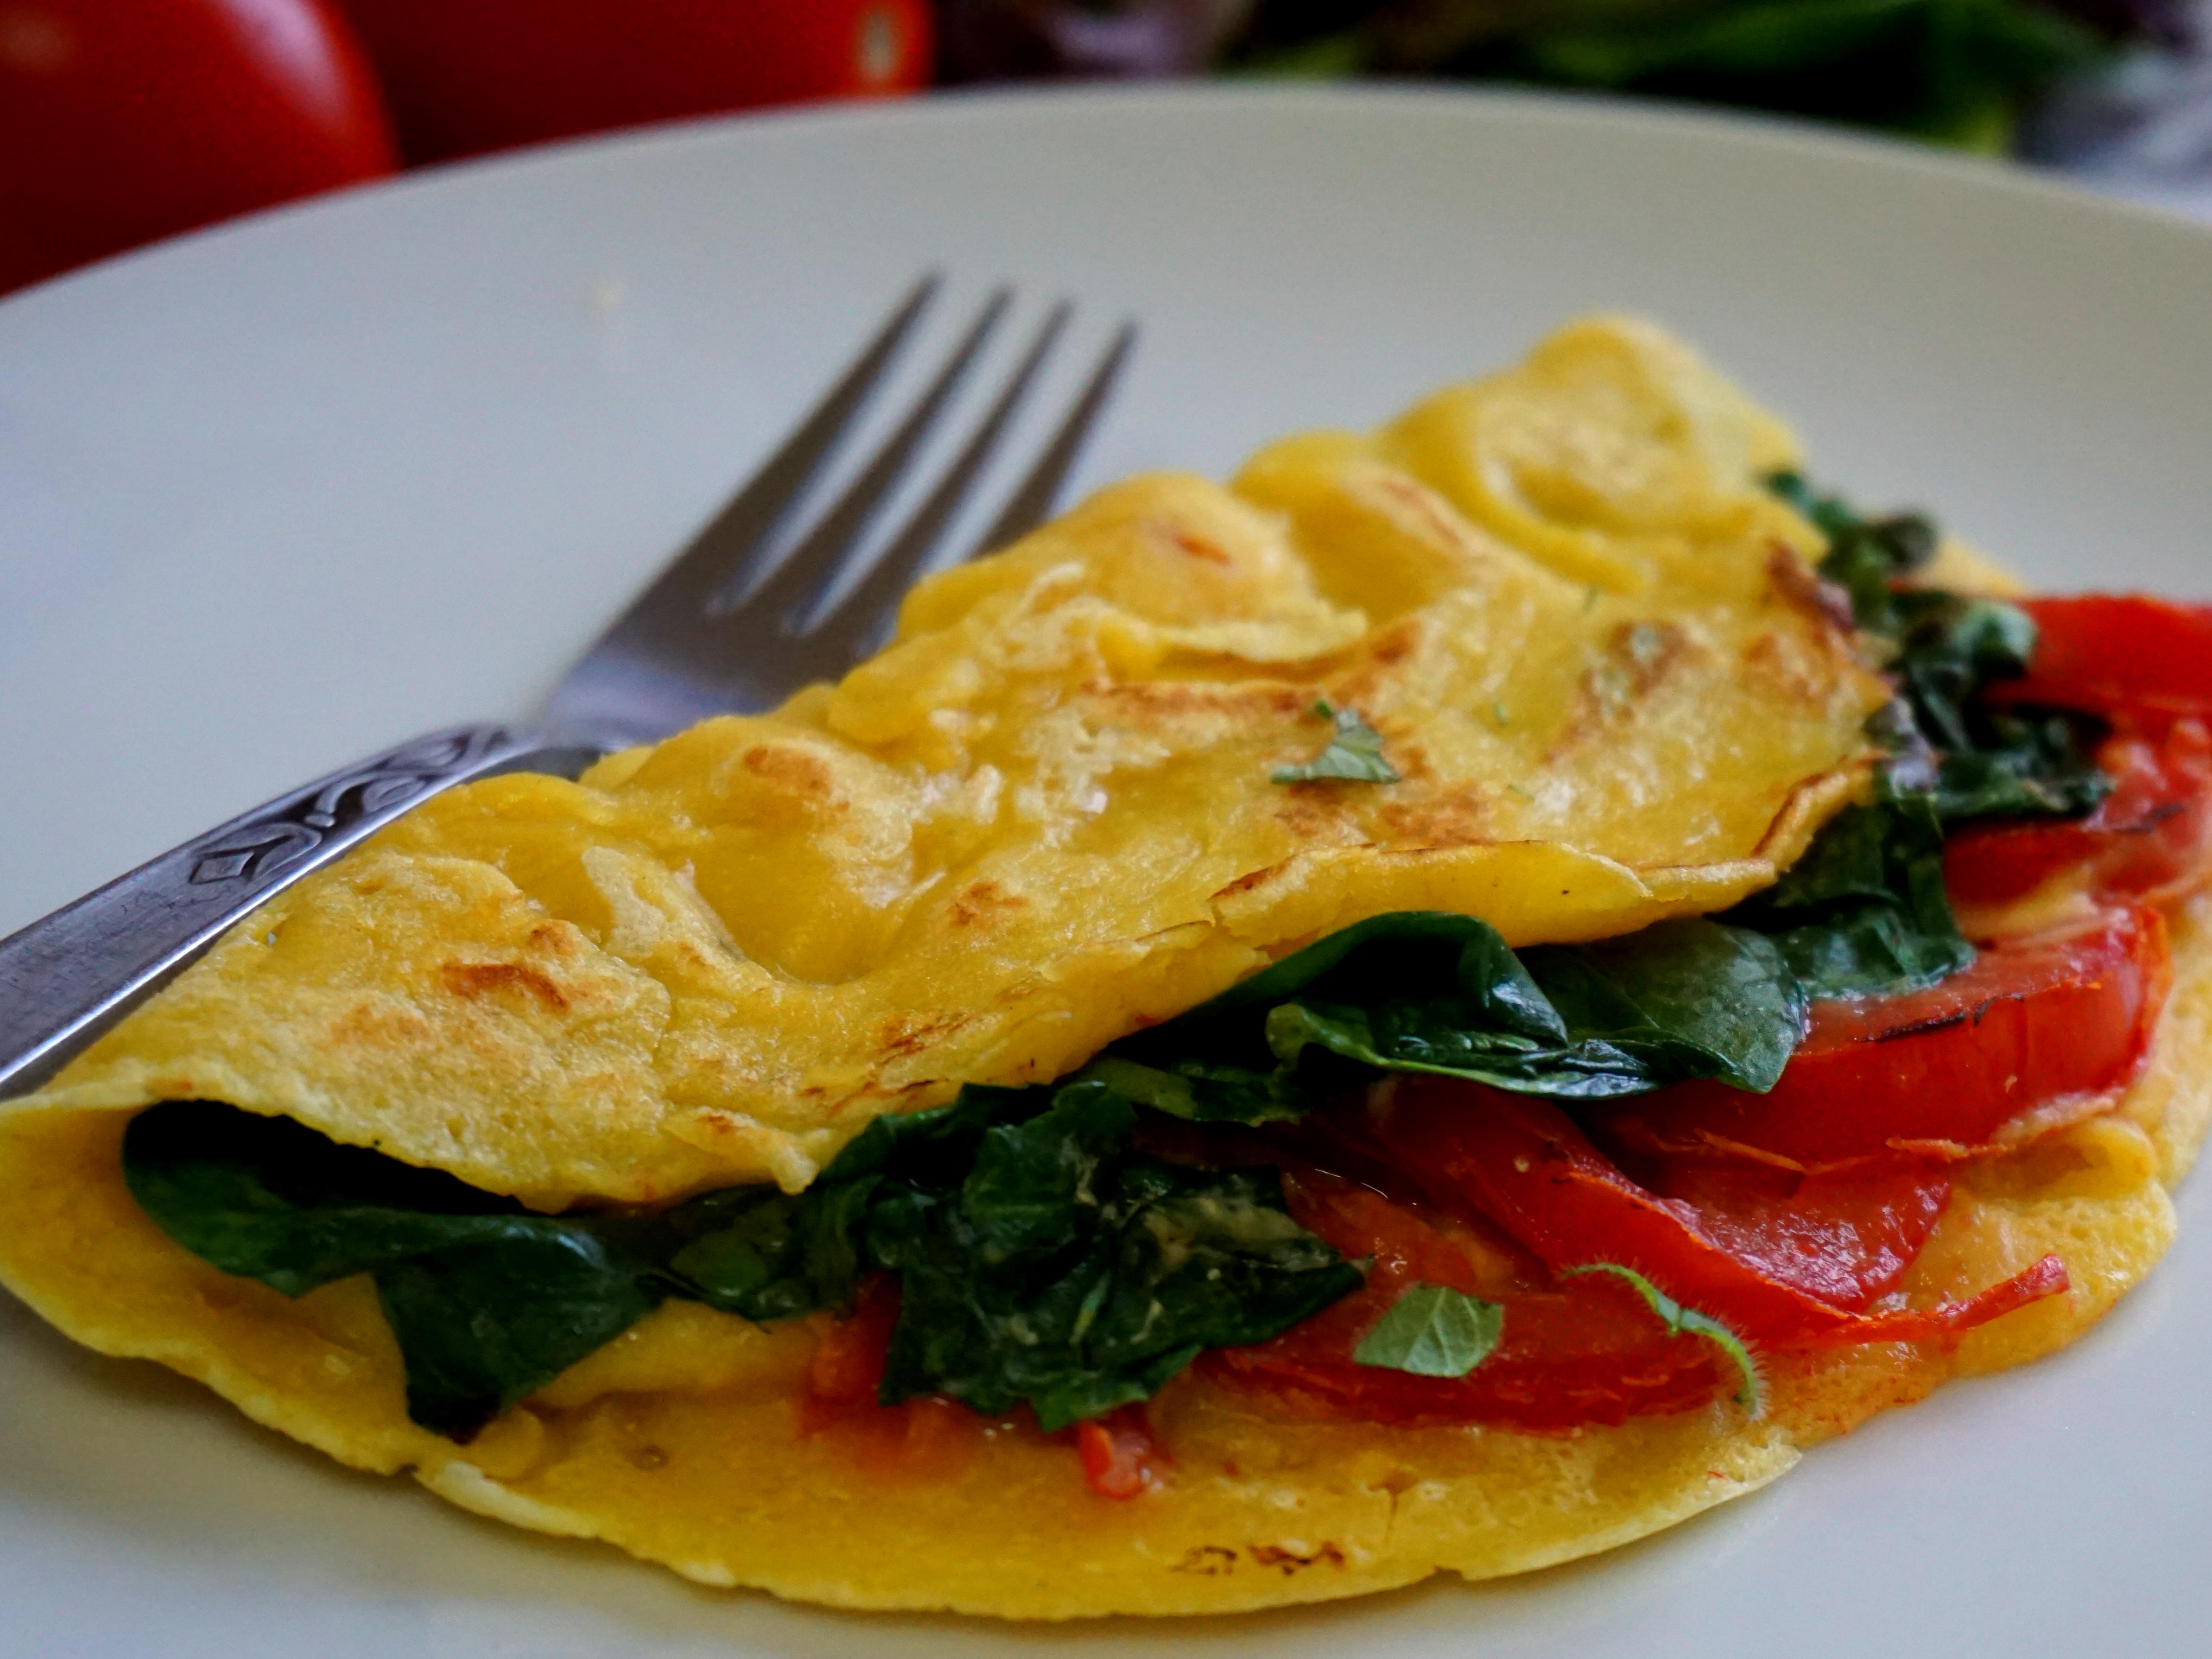 vegan omelette recipe